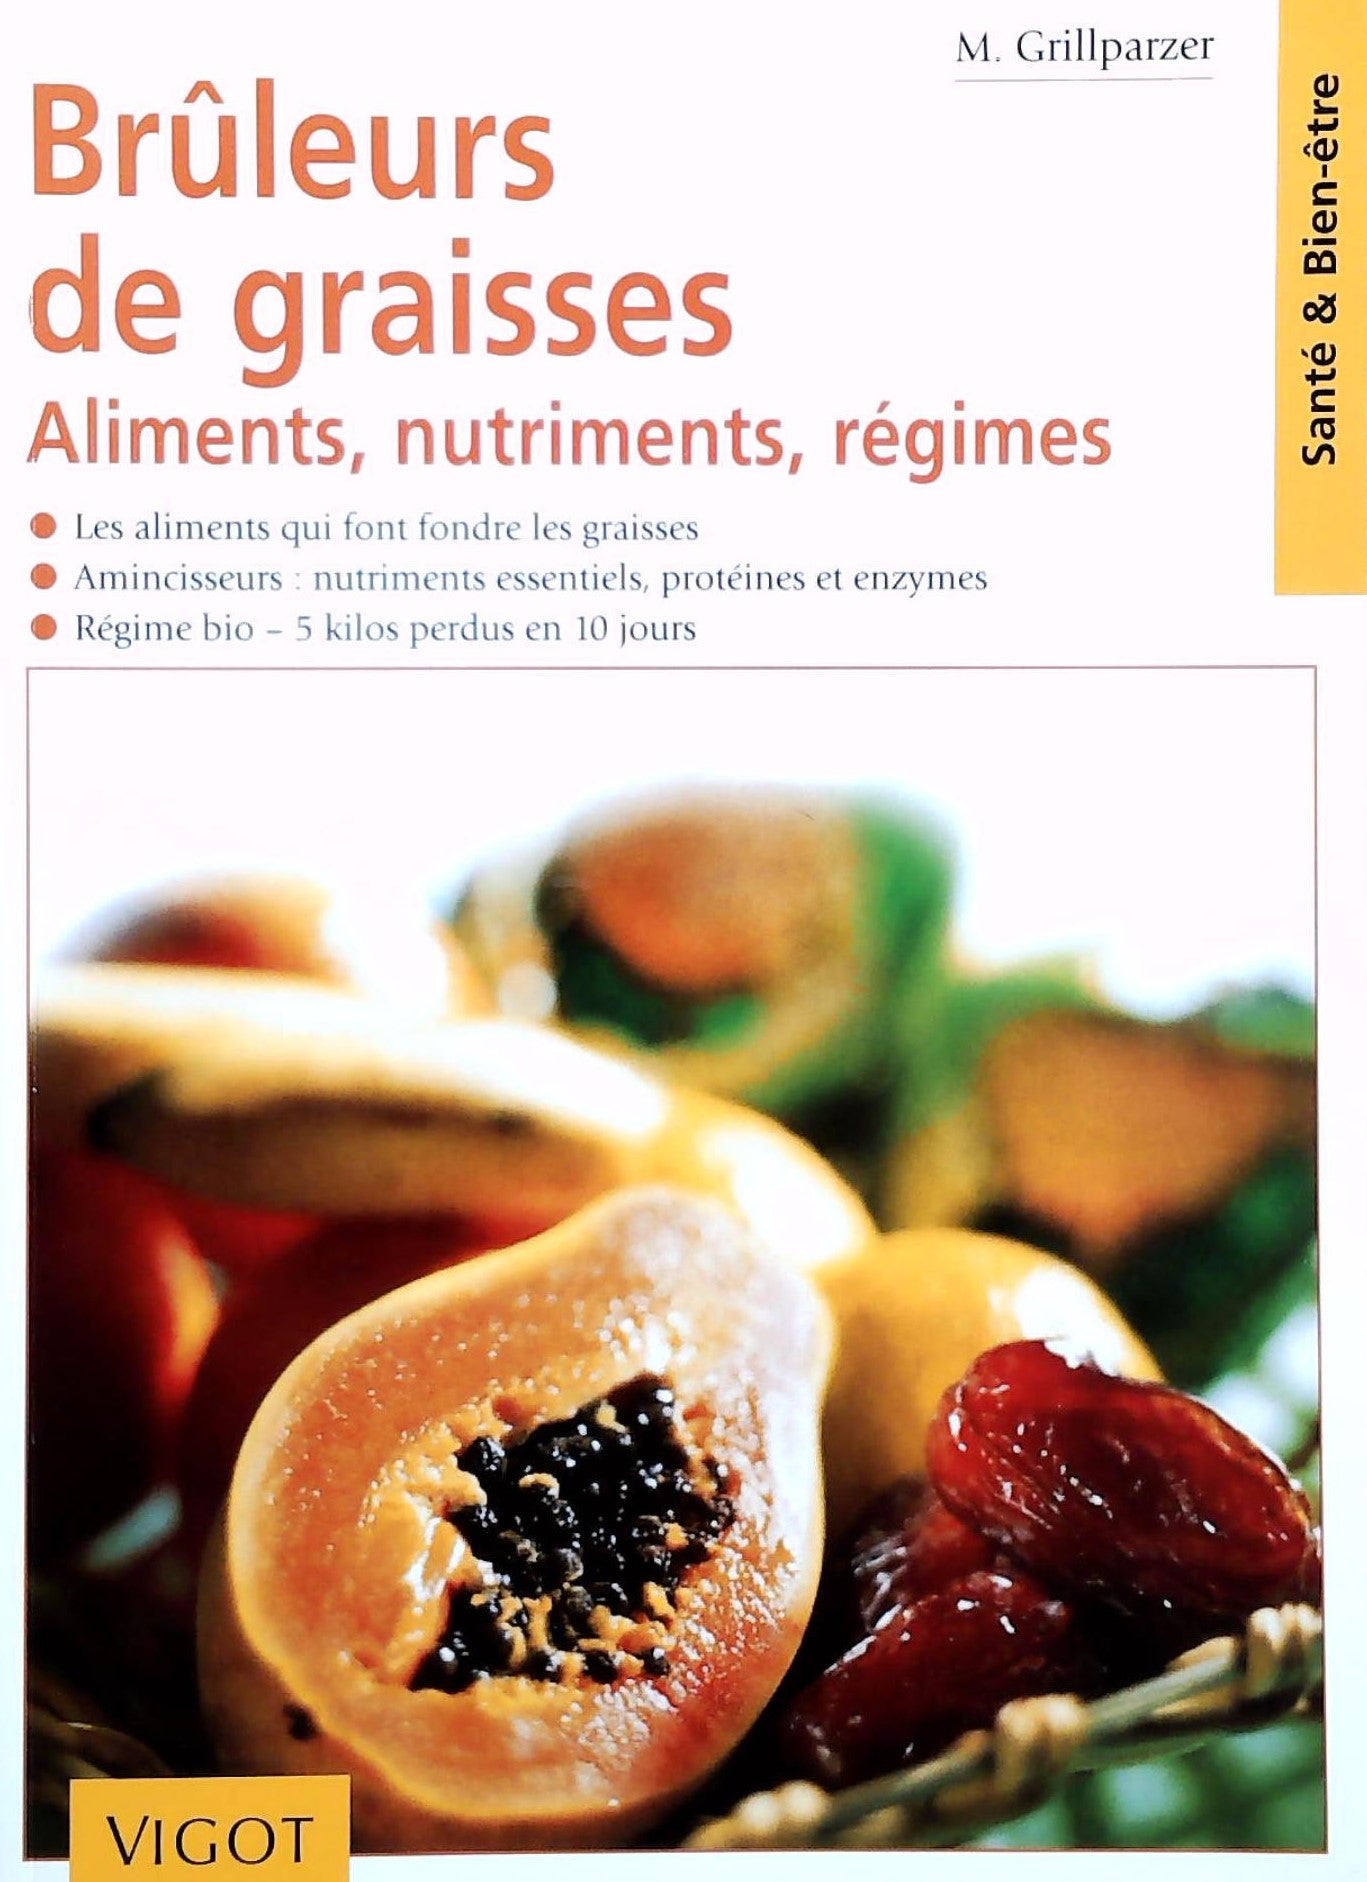 Livre ISBN 2711414795 Brûleurs de graisses : Aliments, nutriments, régimes (M. Grillparzer)